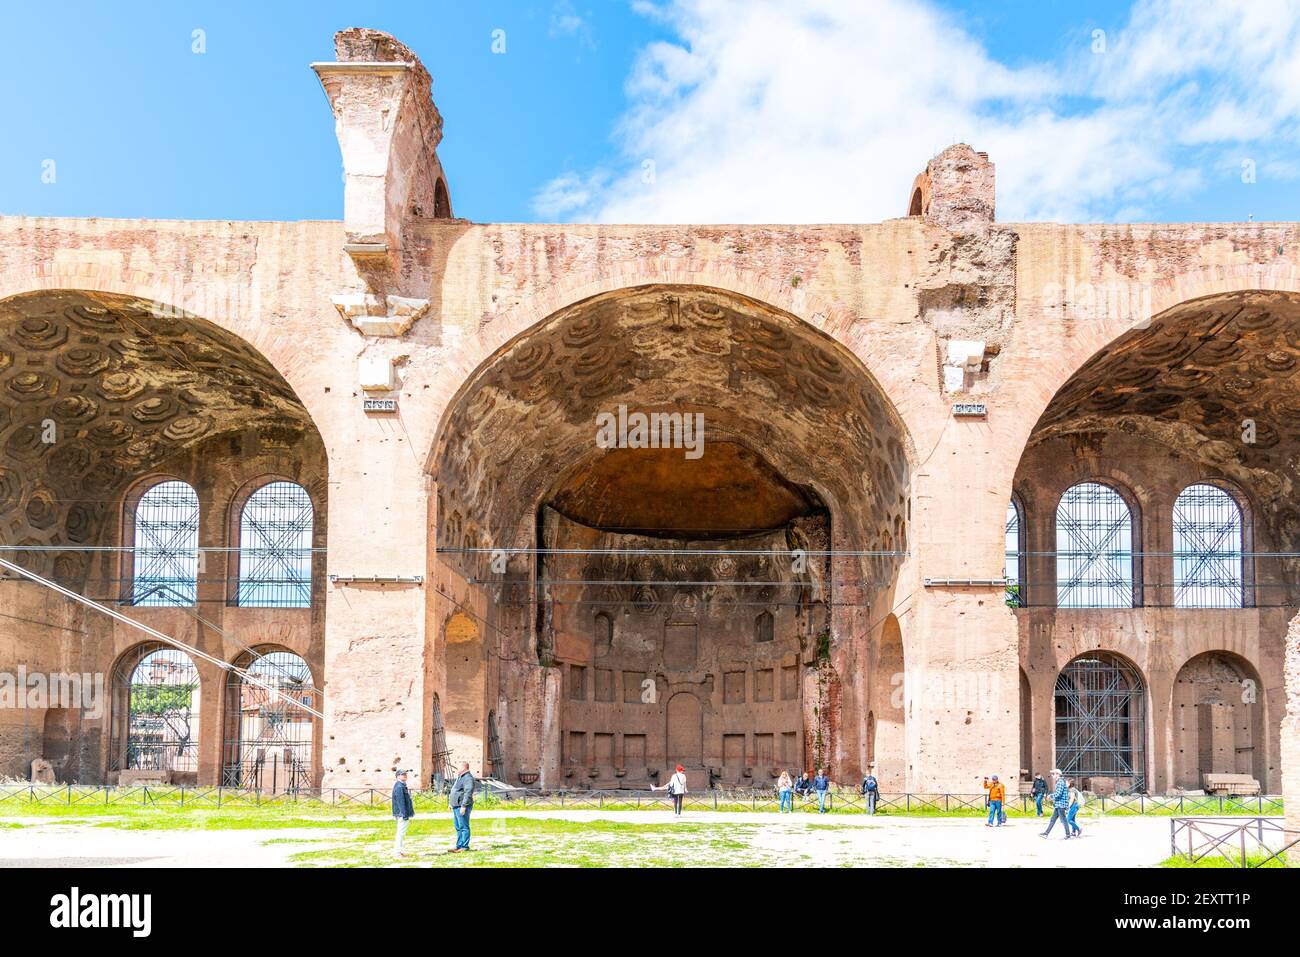 ROMA, ITALIA - 06 MAGGIO 2019: Archi monumentali della Basilica di Massenzio, in italiano: Basilica di Massenzio, rovine del Foro Romano, Roma, Italia Foto Stock